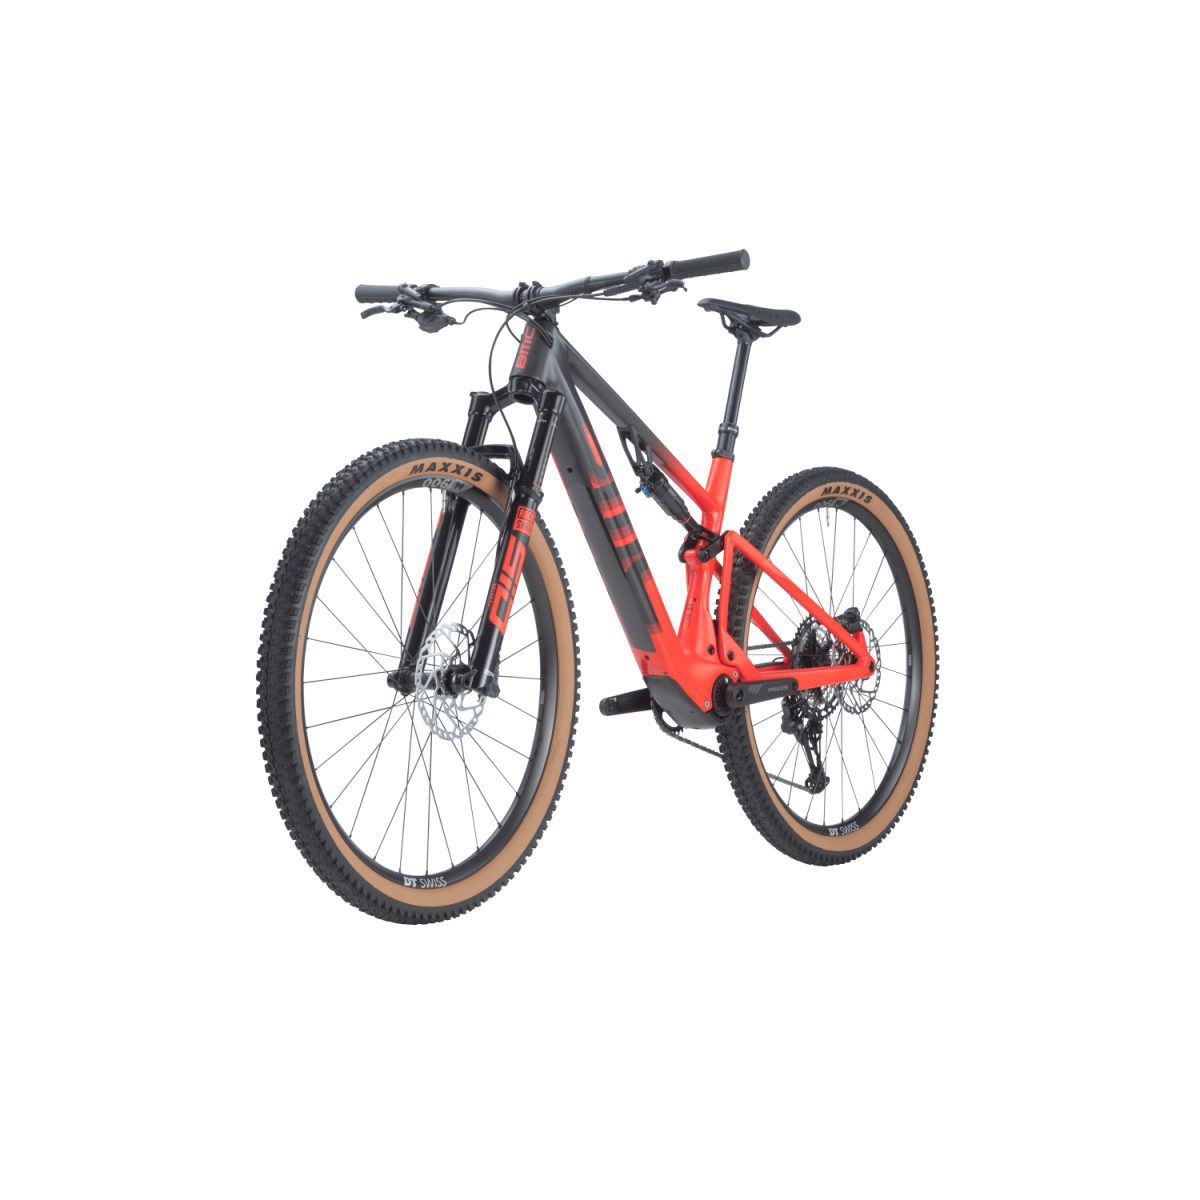 BMC Fourstroke AMP LT Two elektrinis dviratis / Carbon - Red